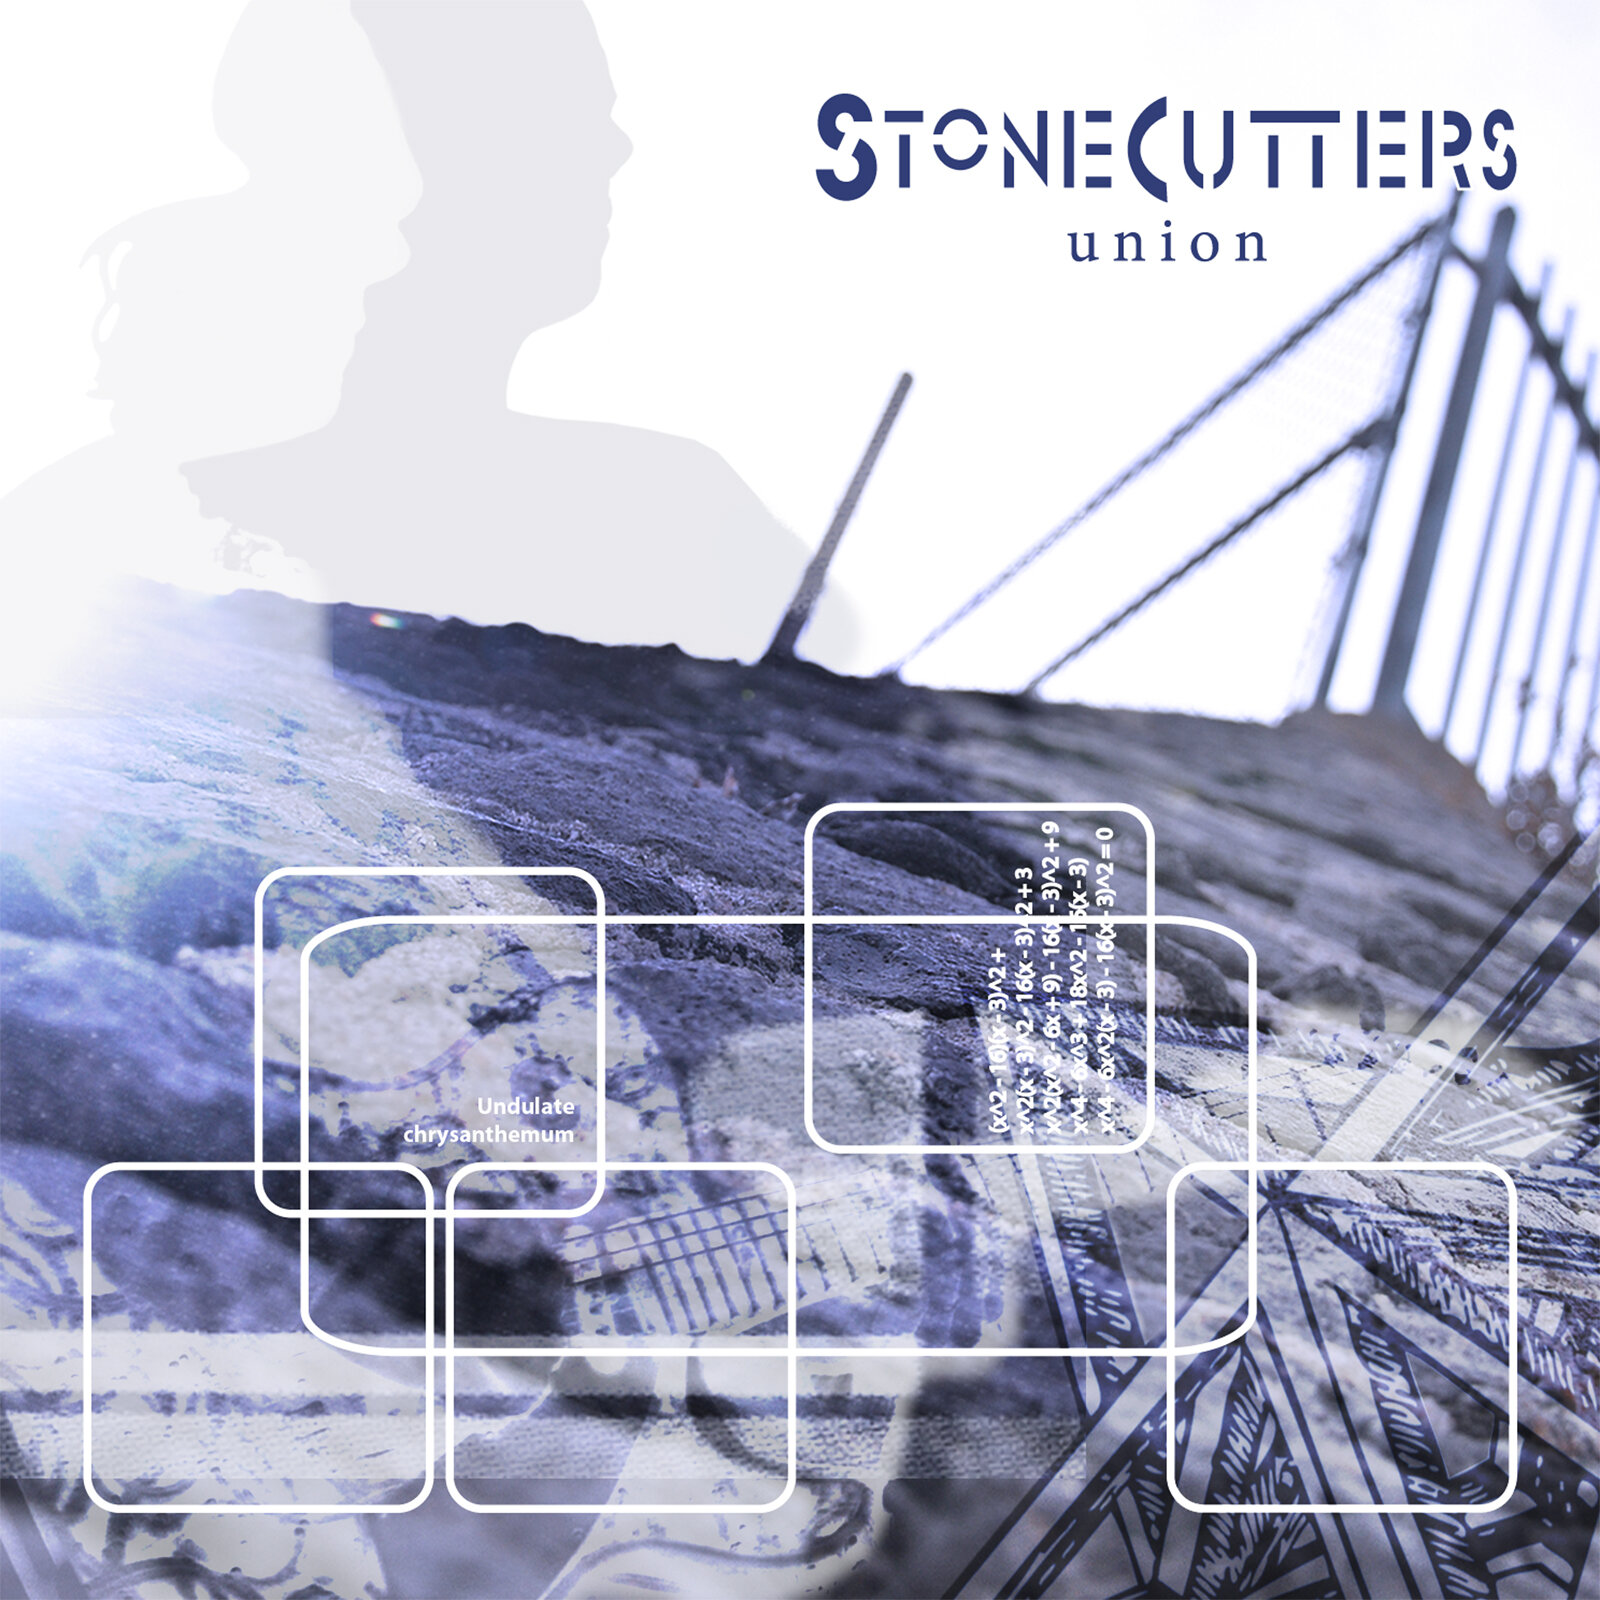 Stonecutters Union.jpeg